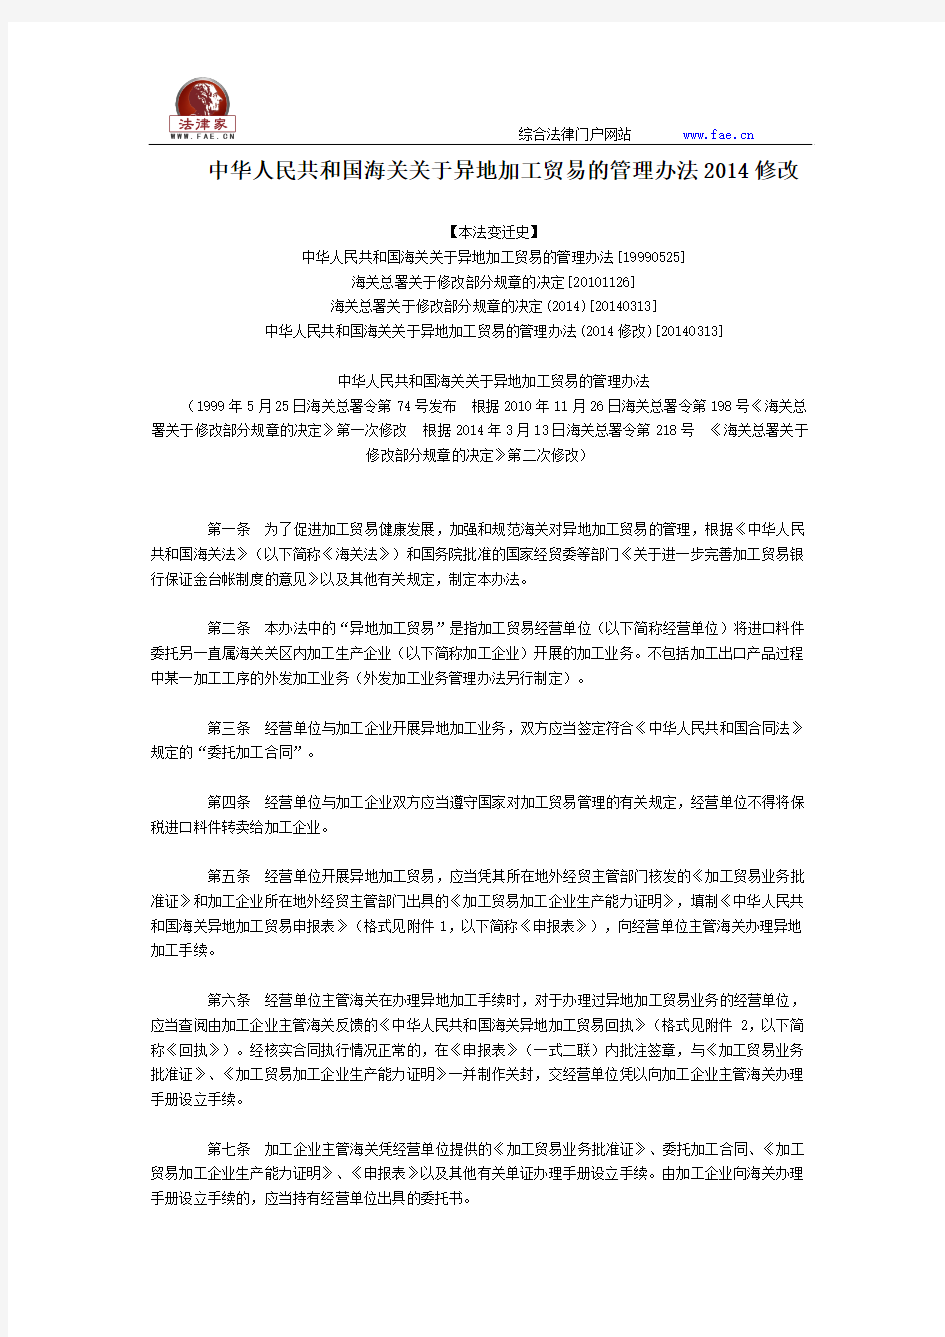 中华人民共和国海关关于异地加工贸易的管理办法2014修改全文--国务院部委规章